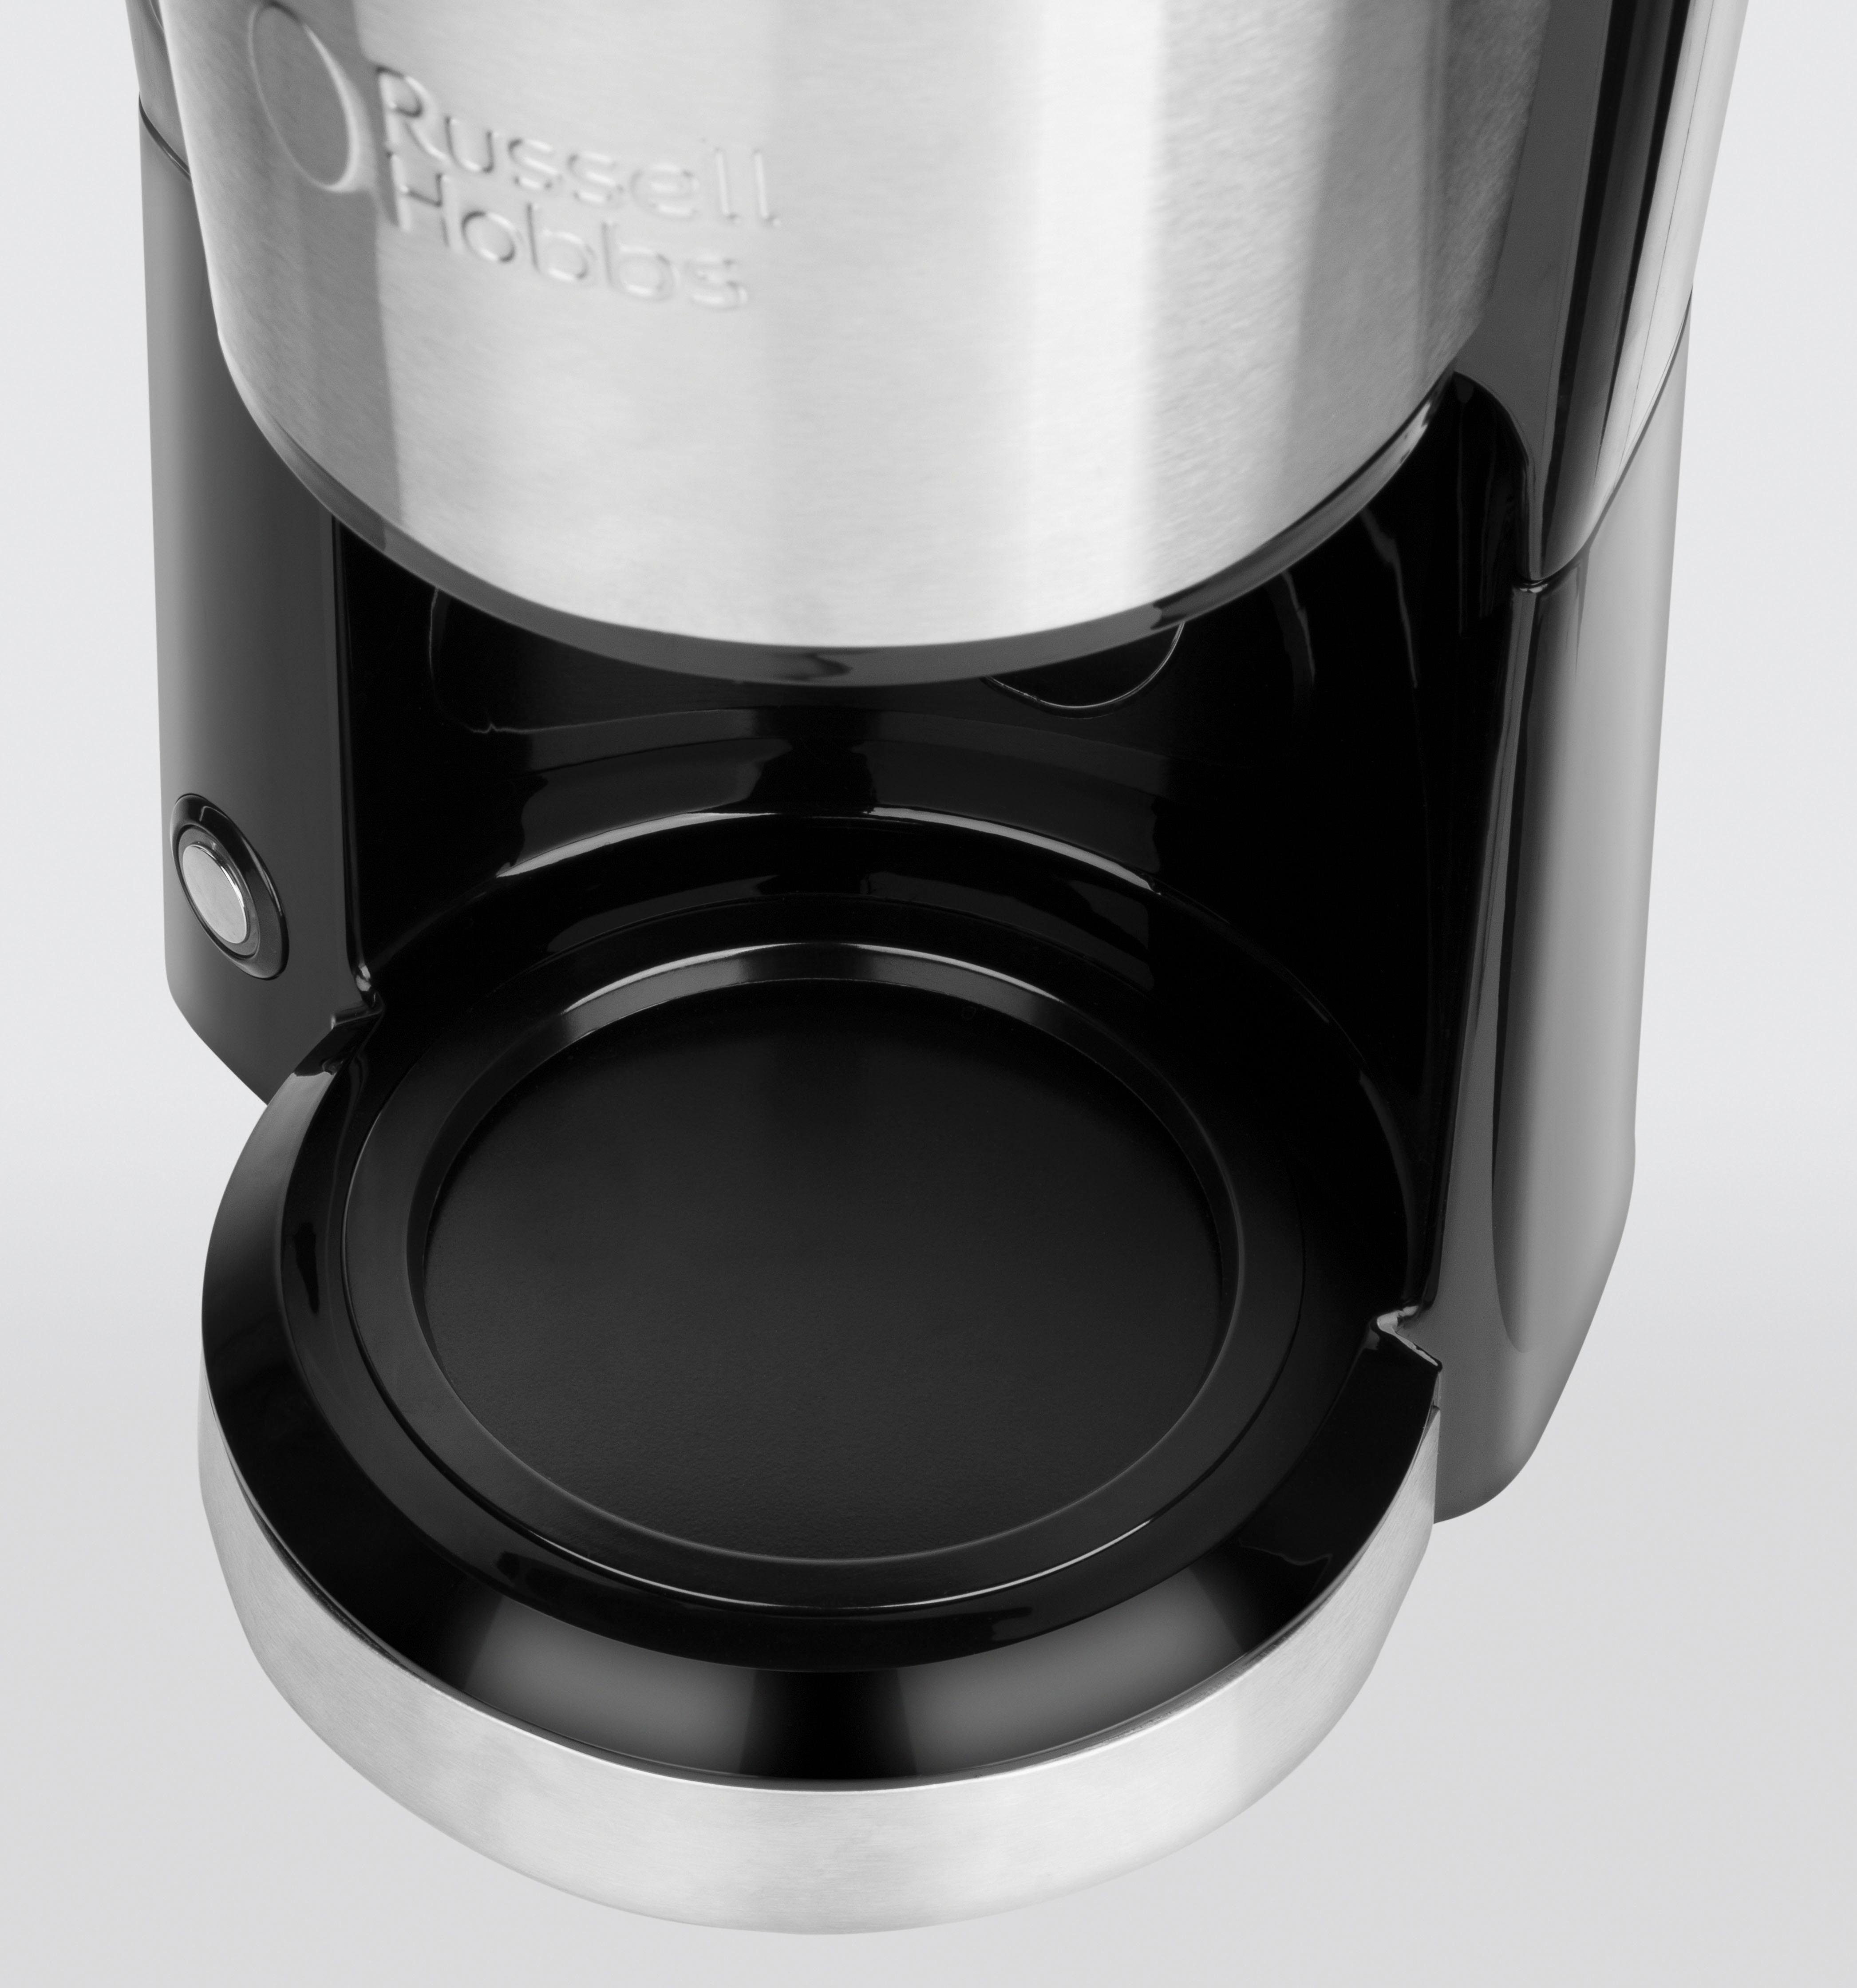 24210-56, Haushalte Küchen Compact 0,62l für Filterkaffeemaschine HOBBS Platzsparendes Home RUSSELL kleine Design 1x2, oder Kaffeekanne, Permanentfilter